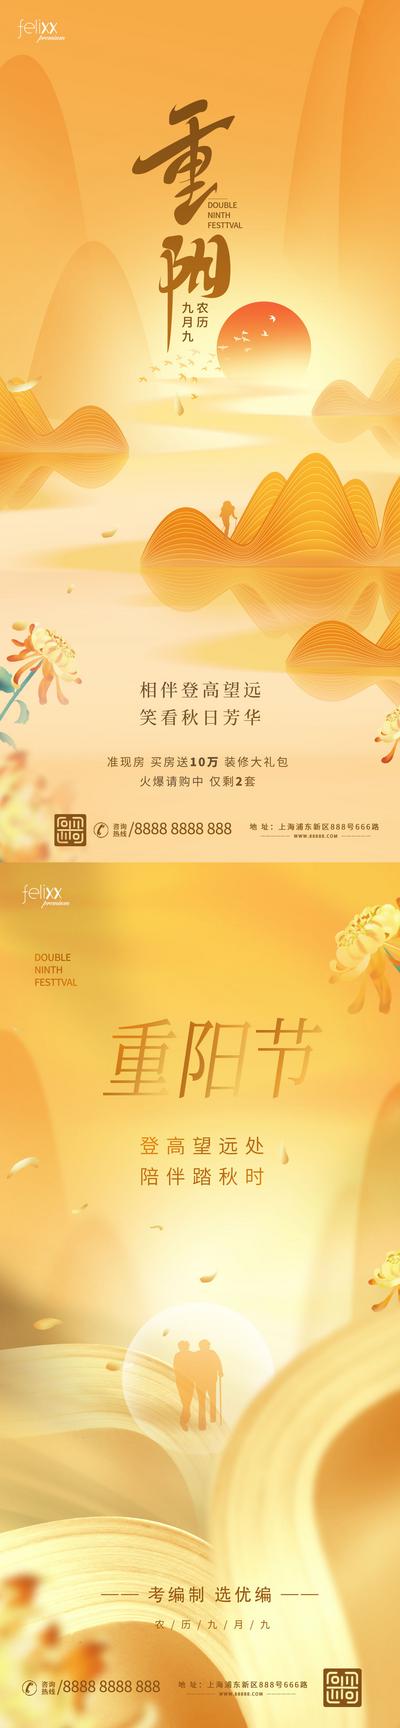 南门网 海报 公历节日 国庆节 大气 建筑 丝绸